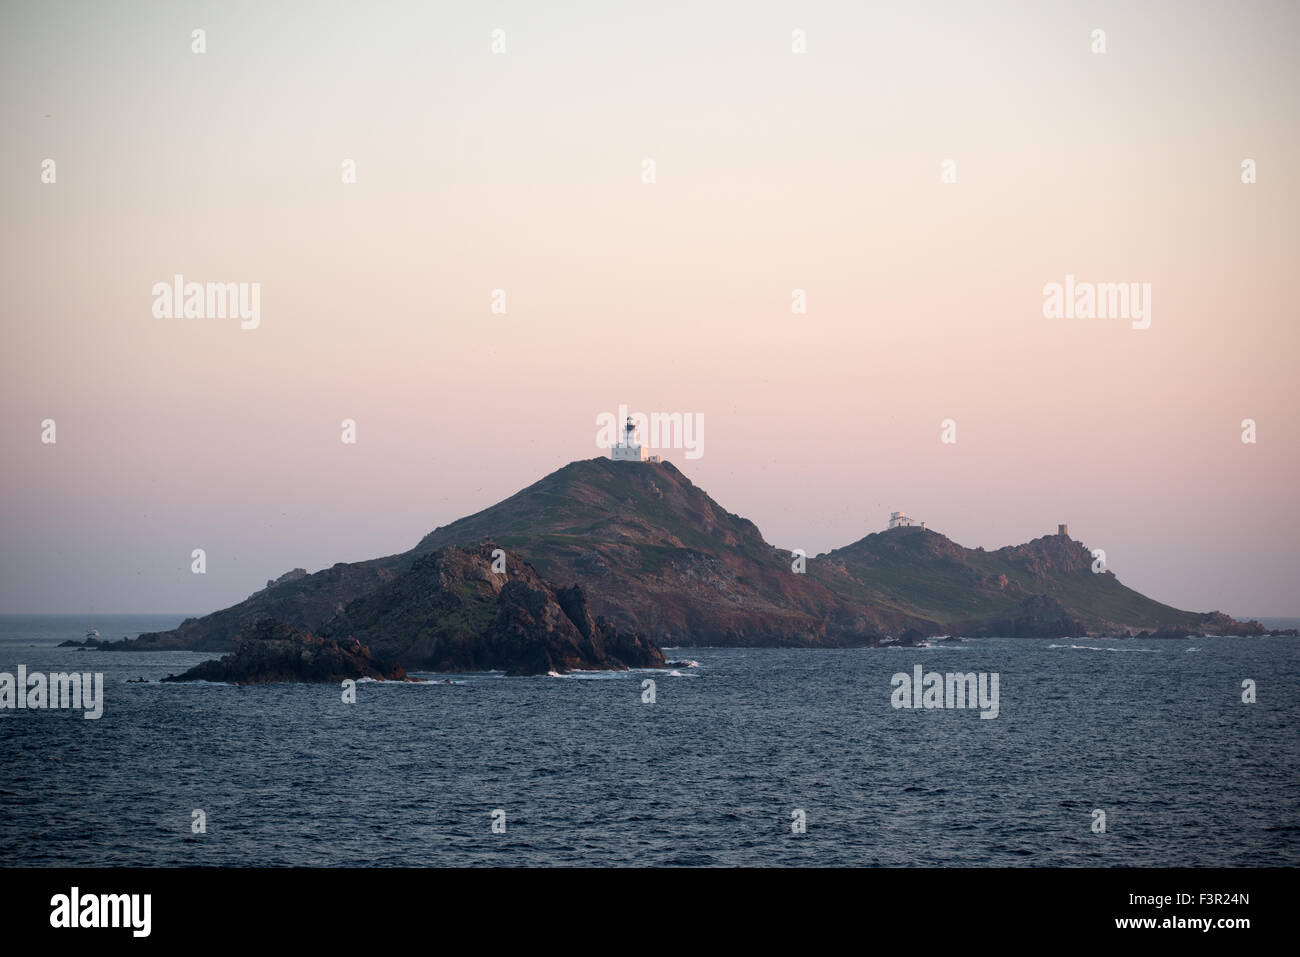 Leuchtturm îles Sanguinaires, Ajaccio, Corse, France Banque D'Images